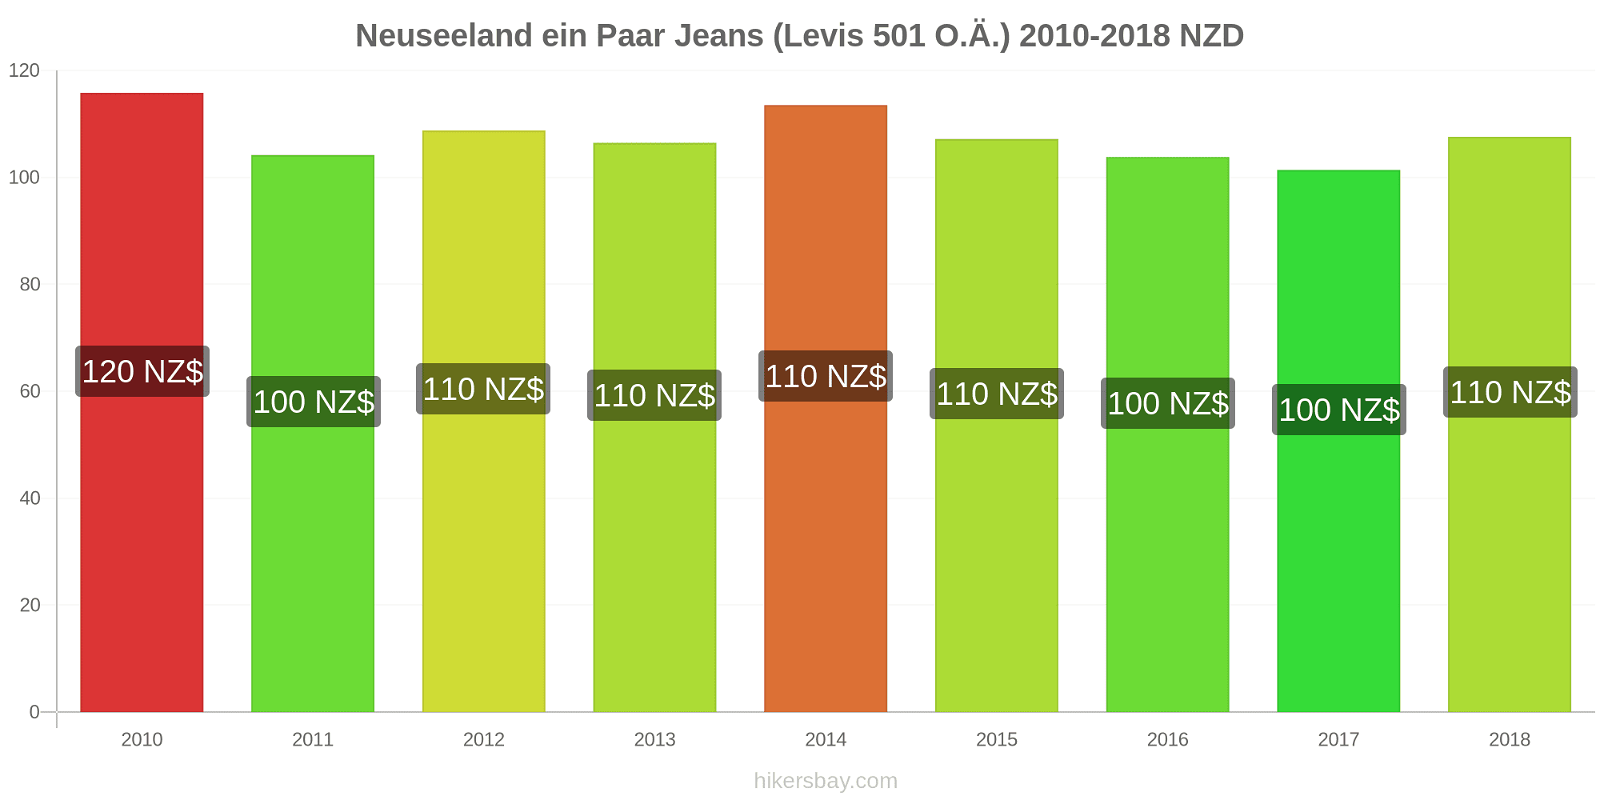 Neuseeland Preisänderungen 1 Paar Jeans (Levis 501 oder ähnlich) hikersbay.com